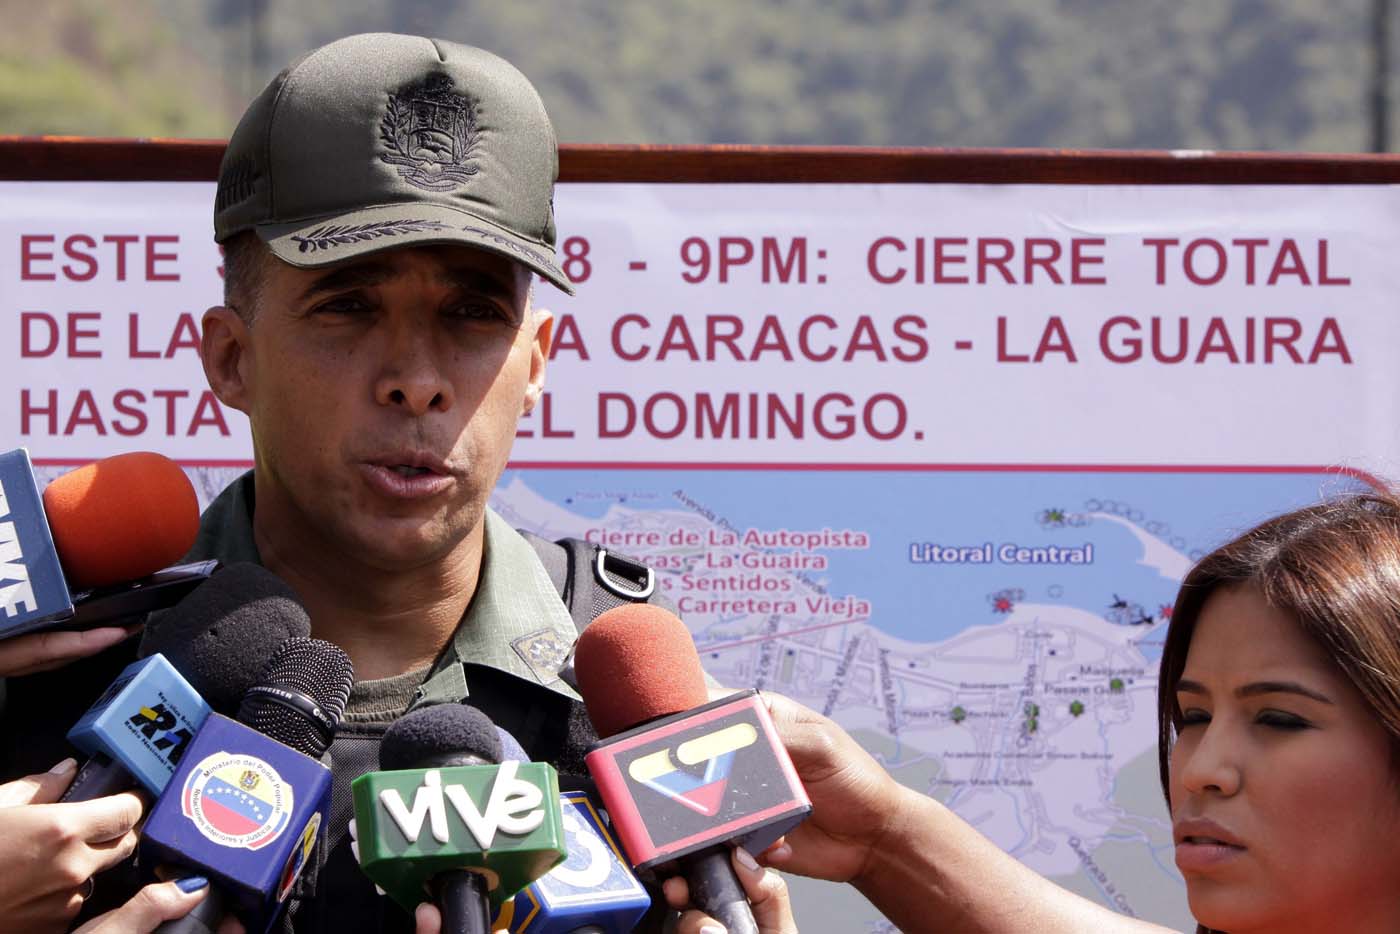 Benavides Torres proclamó a la GNB “chavista” en su discurso y prometió luchar “contra la corrupción” (Video)